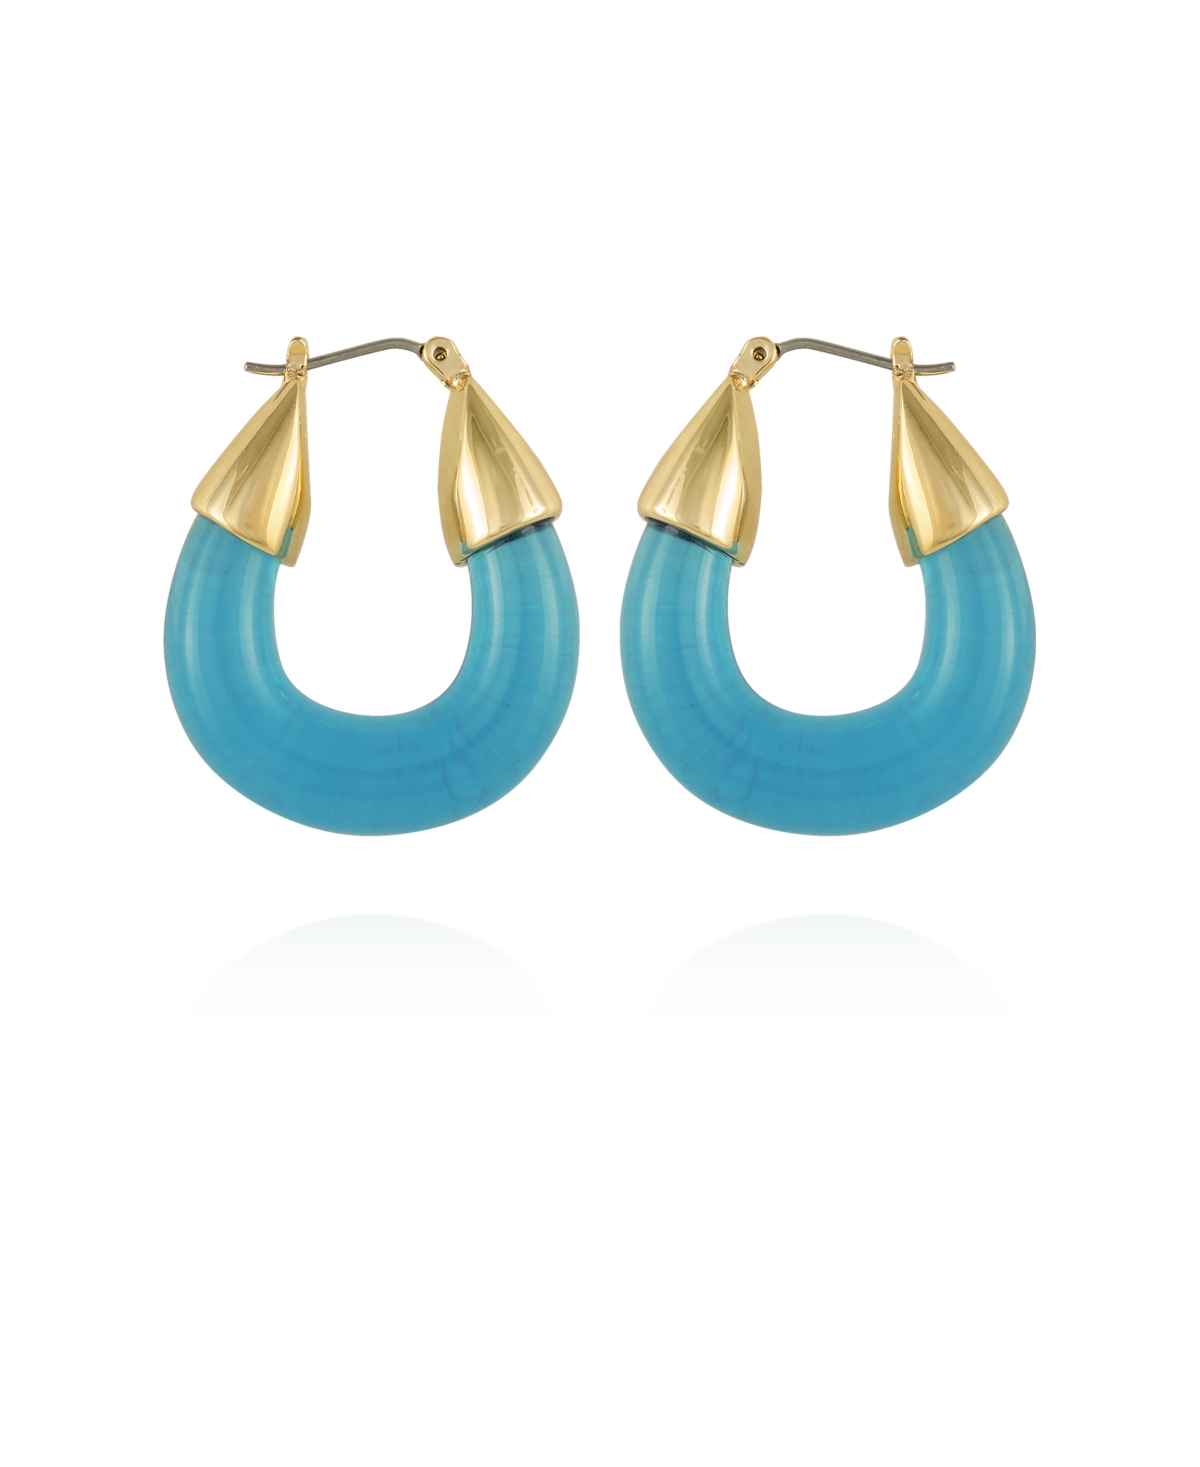 Rock Candy Hoop Earrings - Gold-Tone, Blue